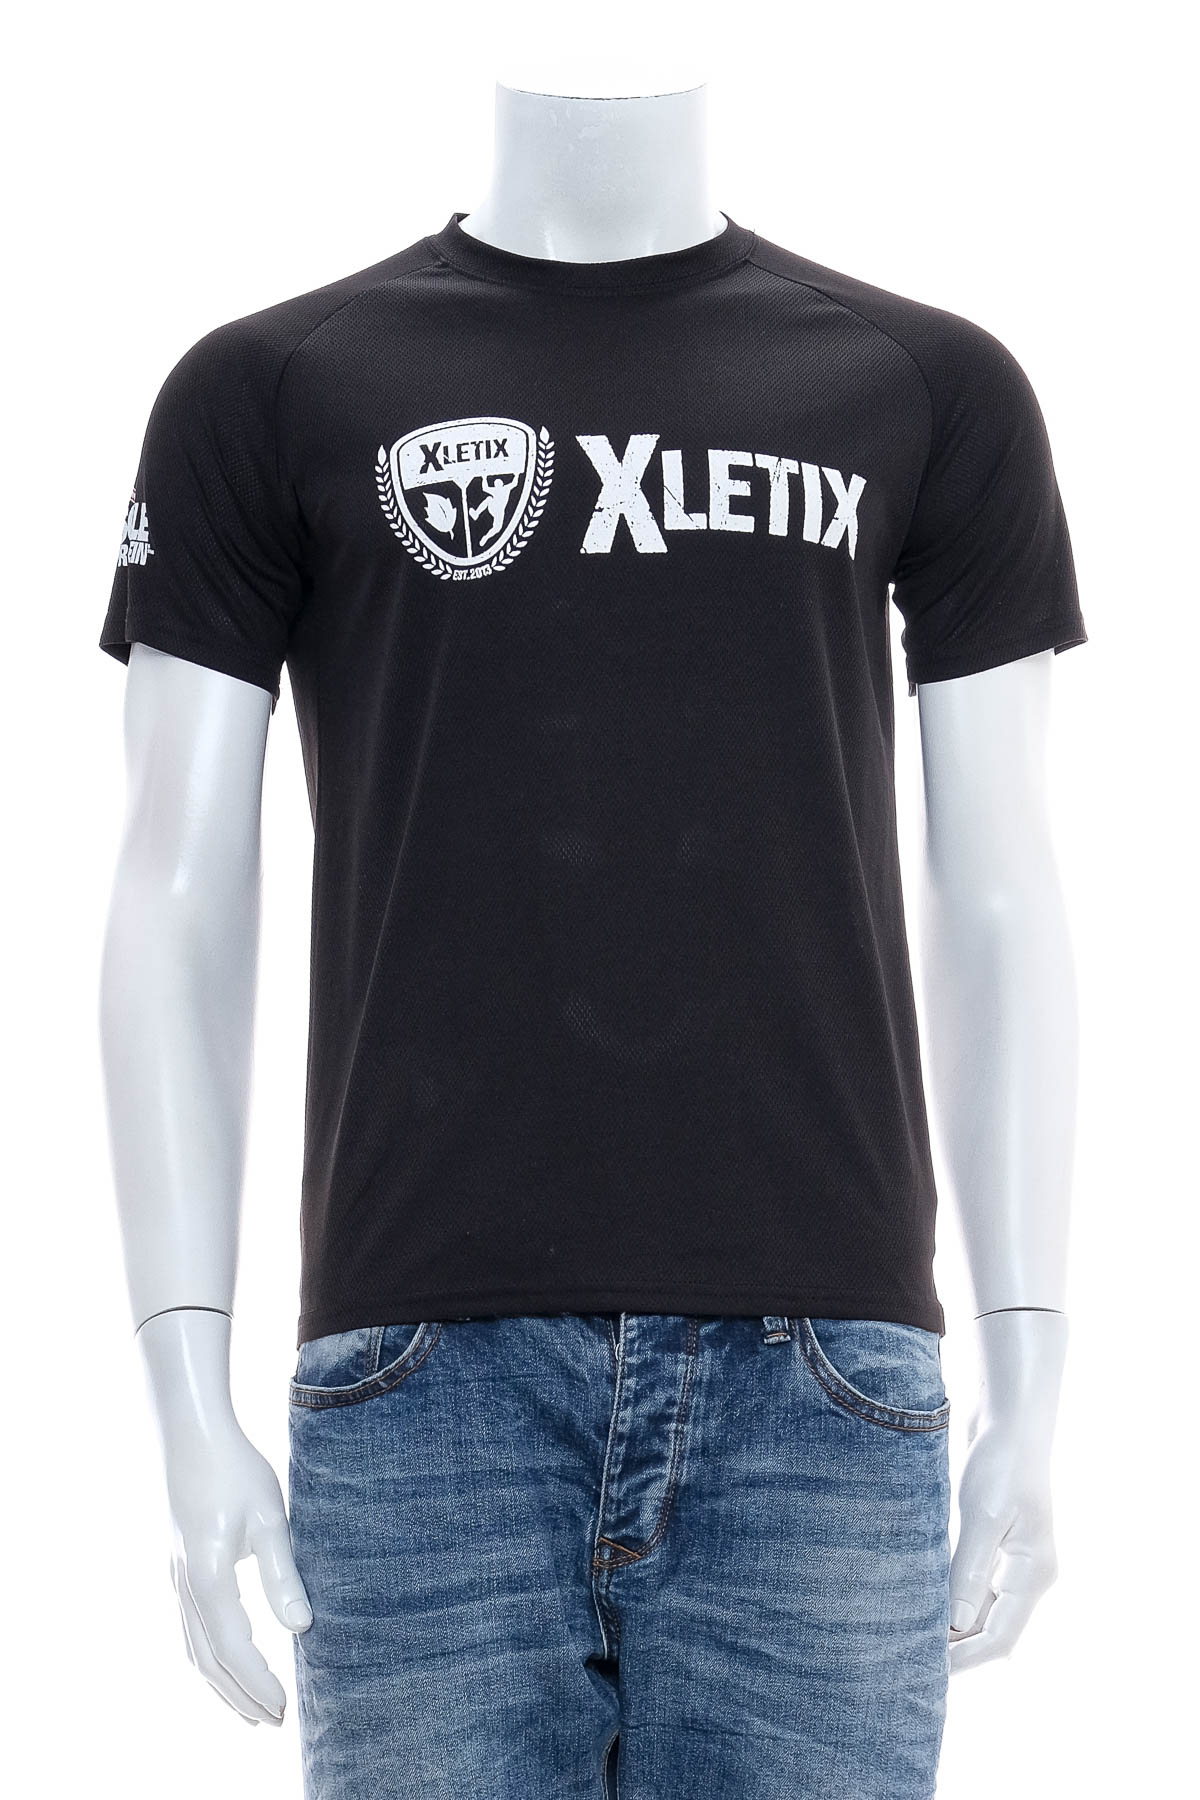 Αντρική μπλούζα - XLETIX - 0